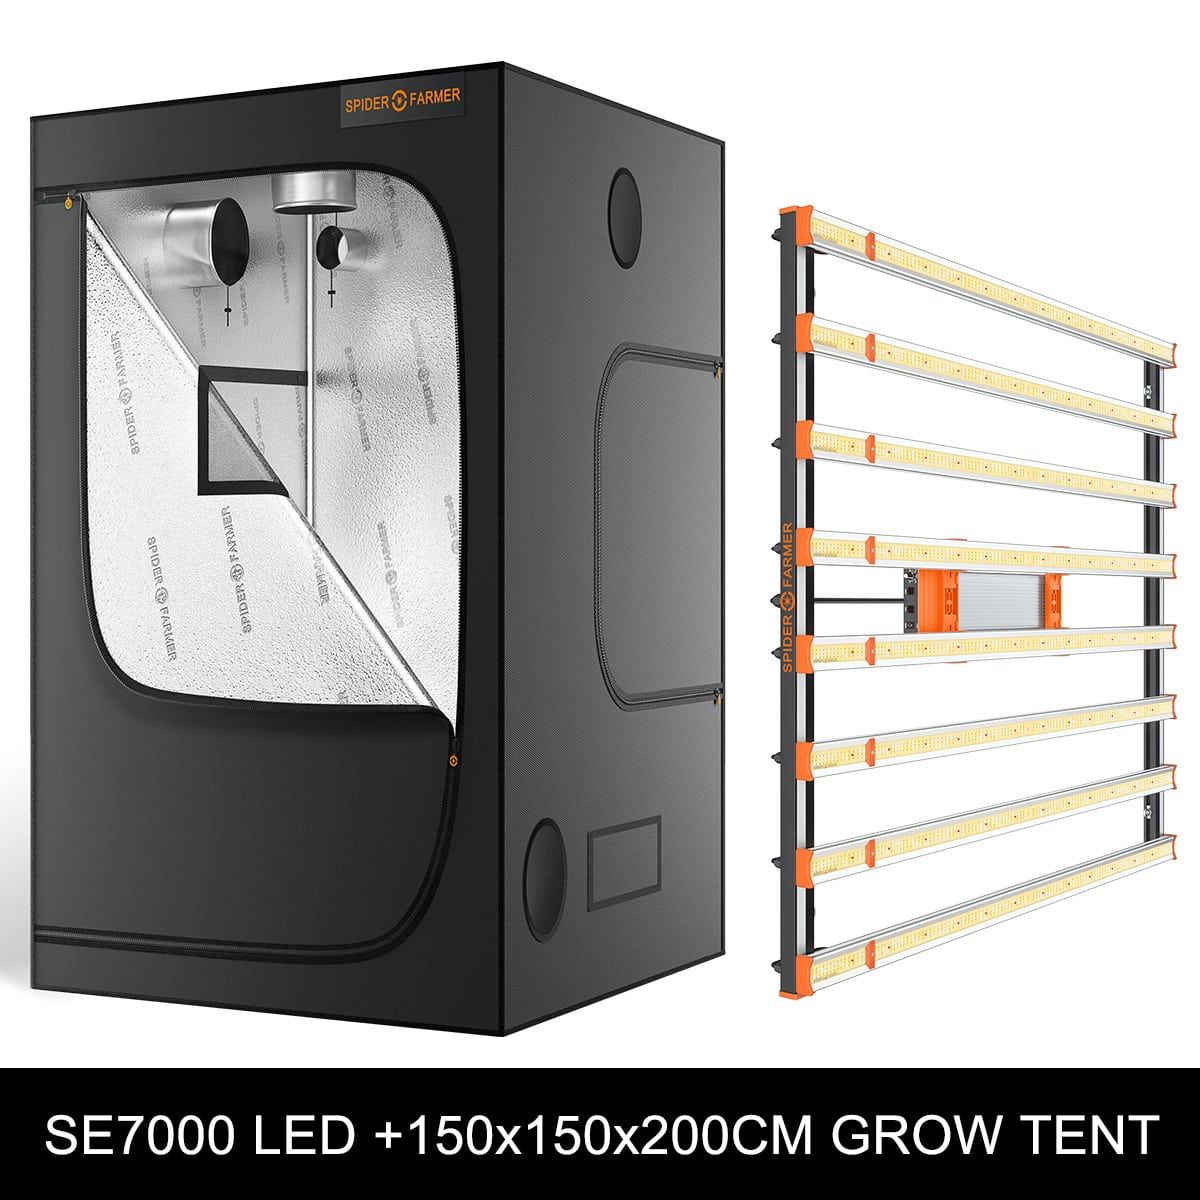 Spider Farmer SE7000 730W Led grow light +150x150x200cm Grow Tent